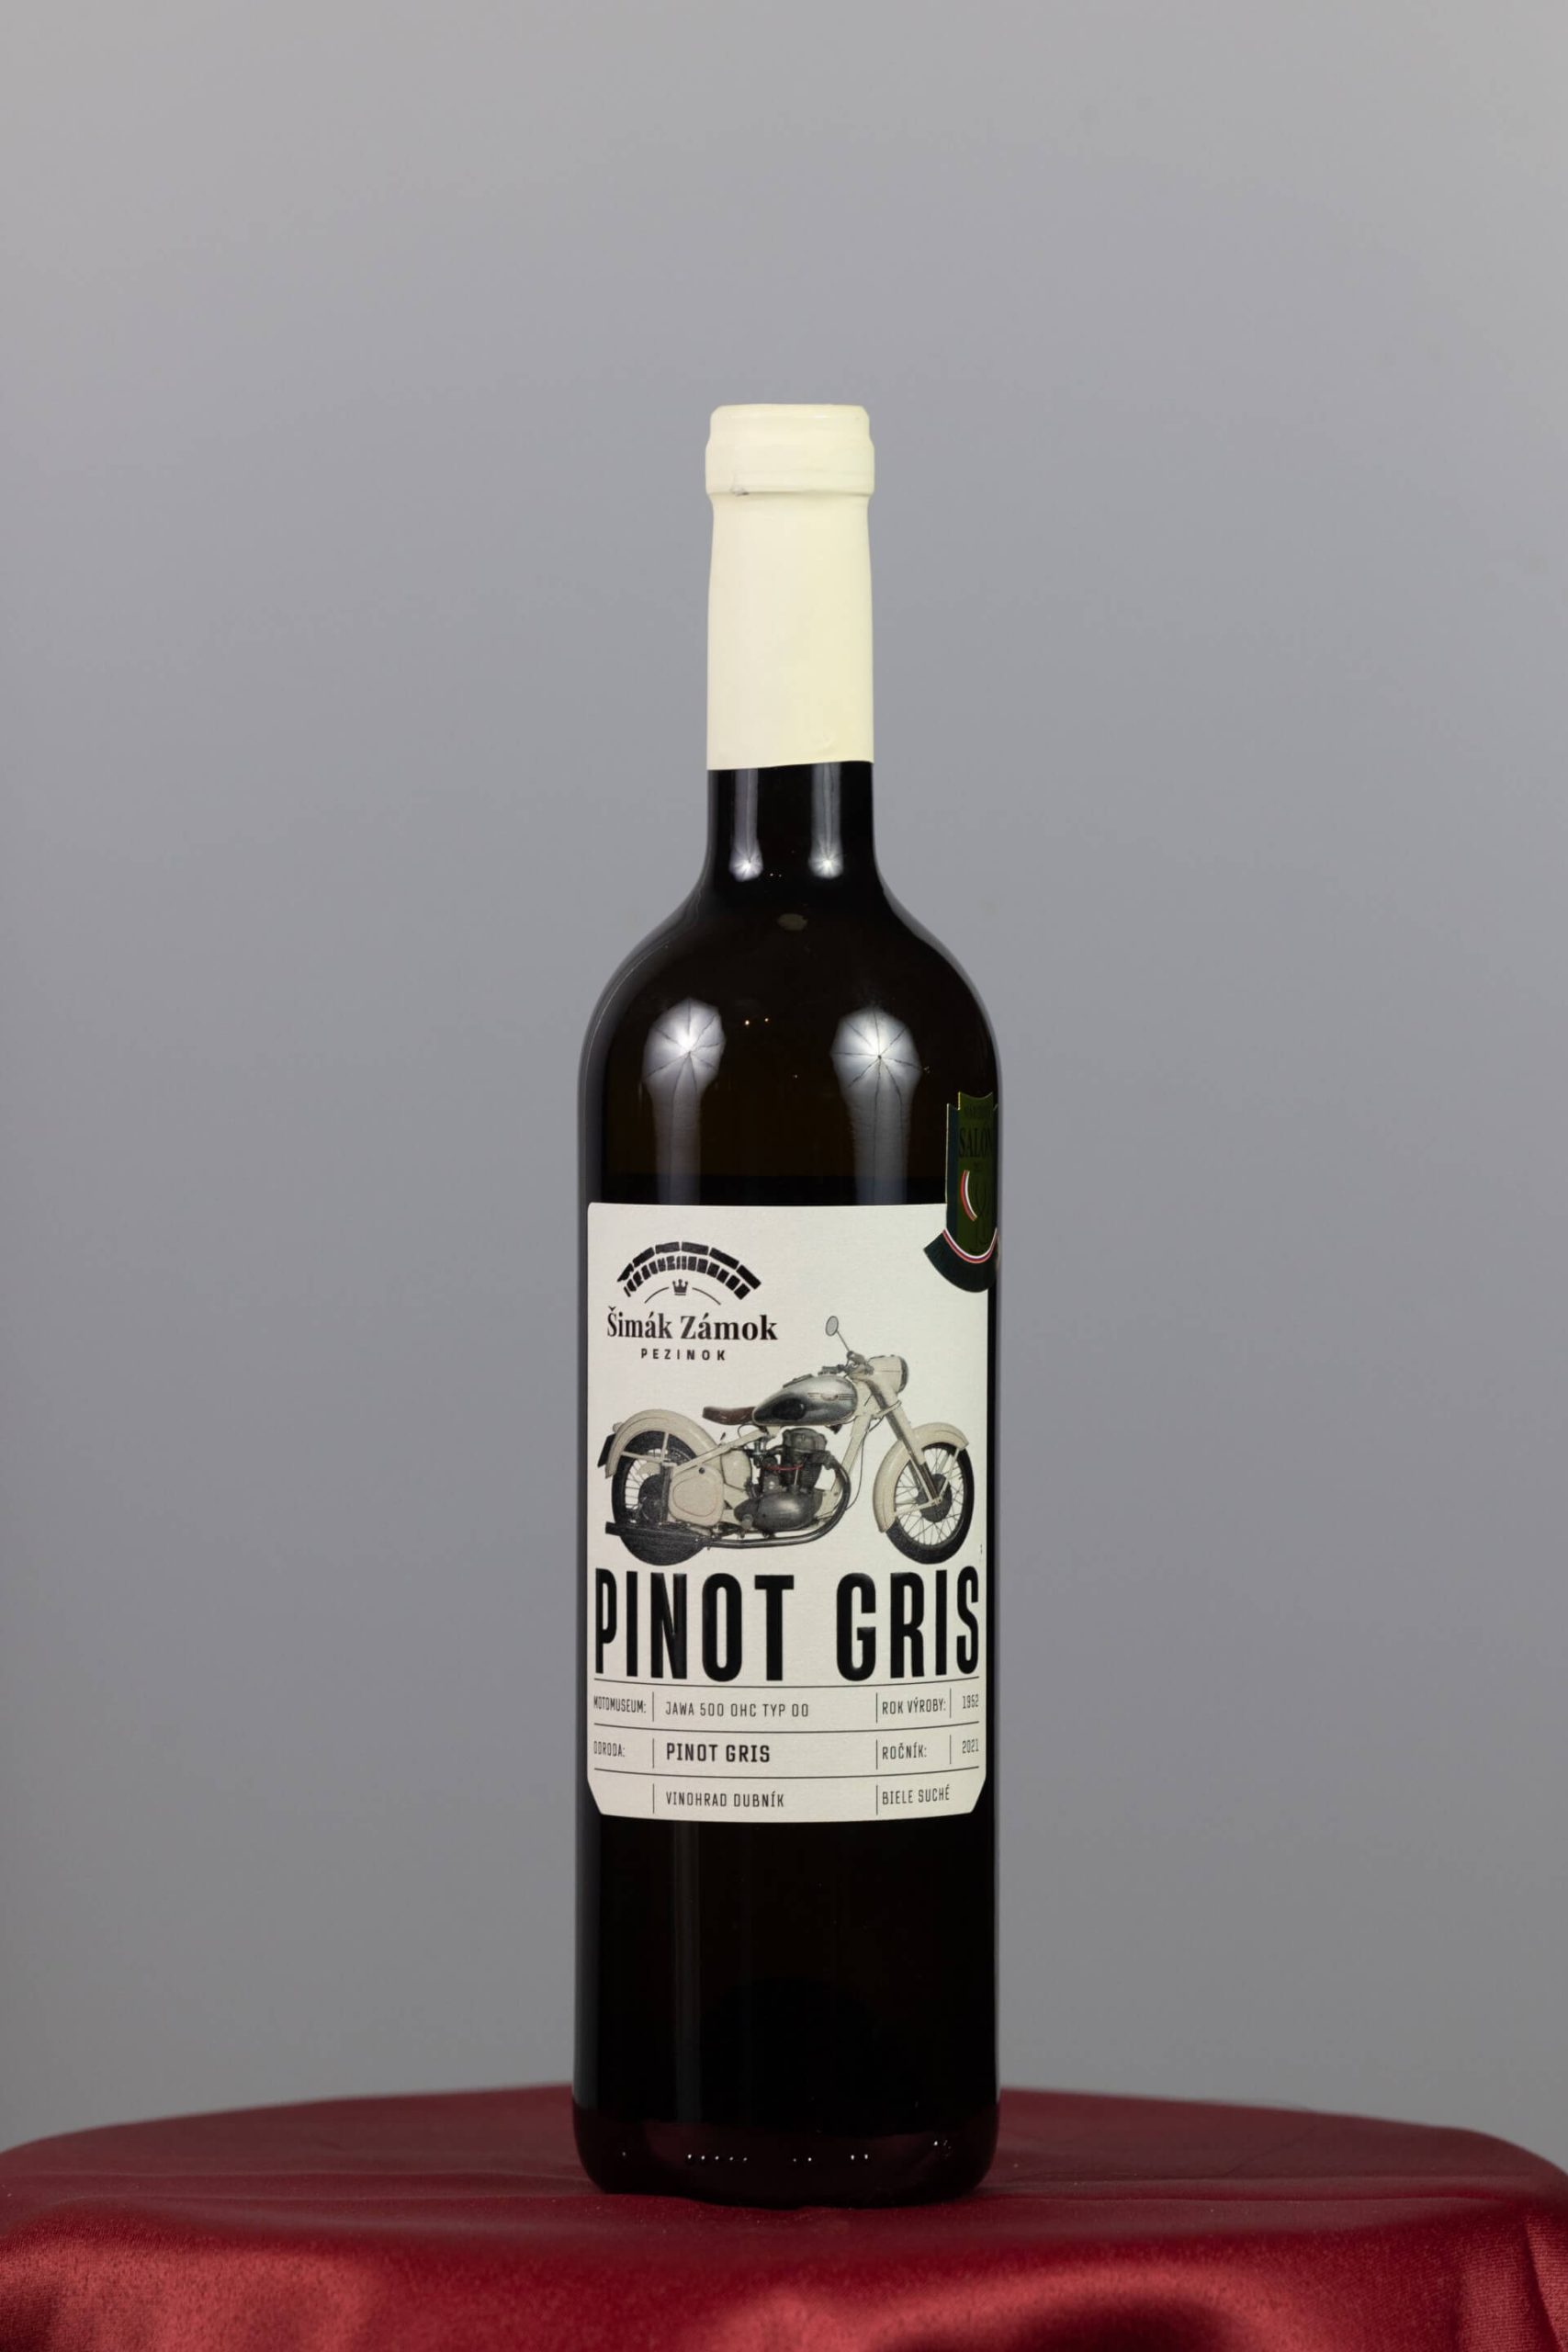 Pinot gris - Zámocké vinárstvo